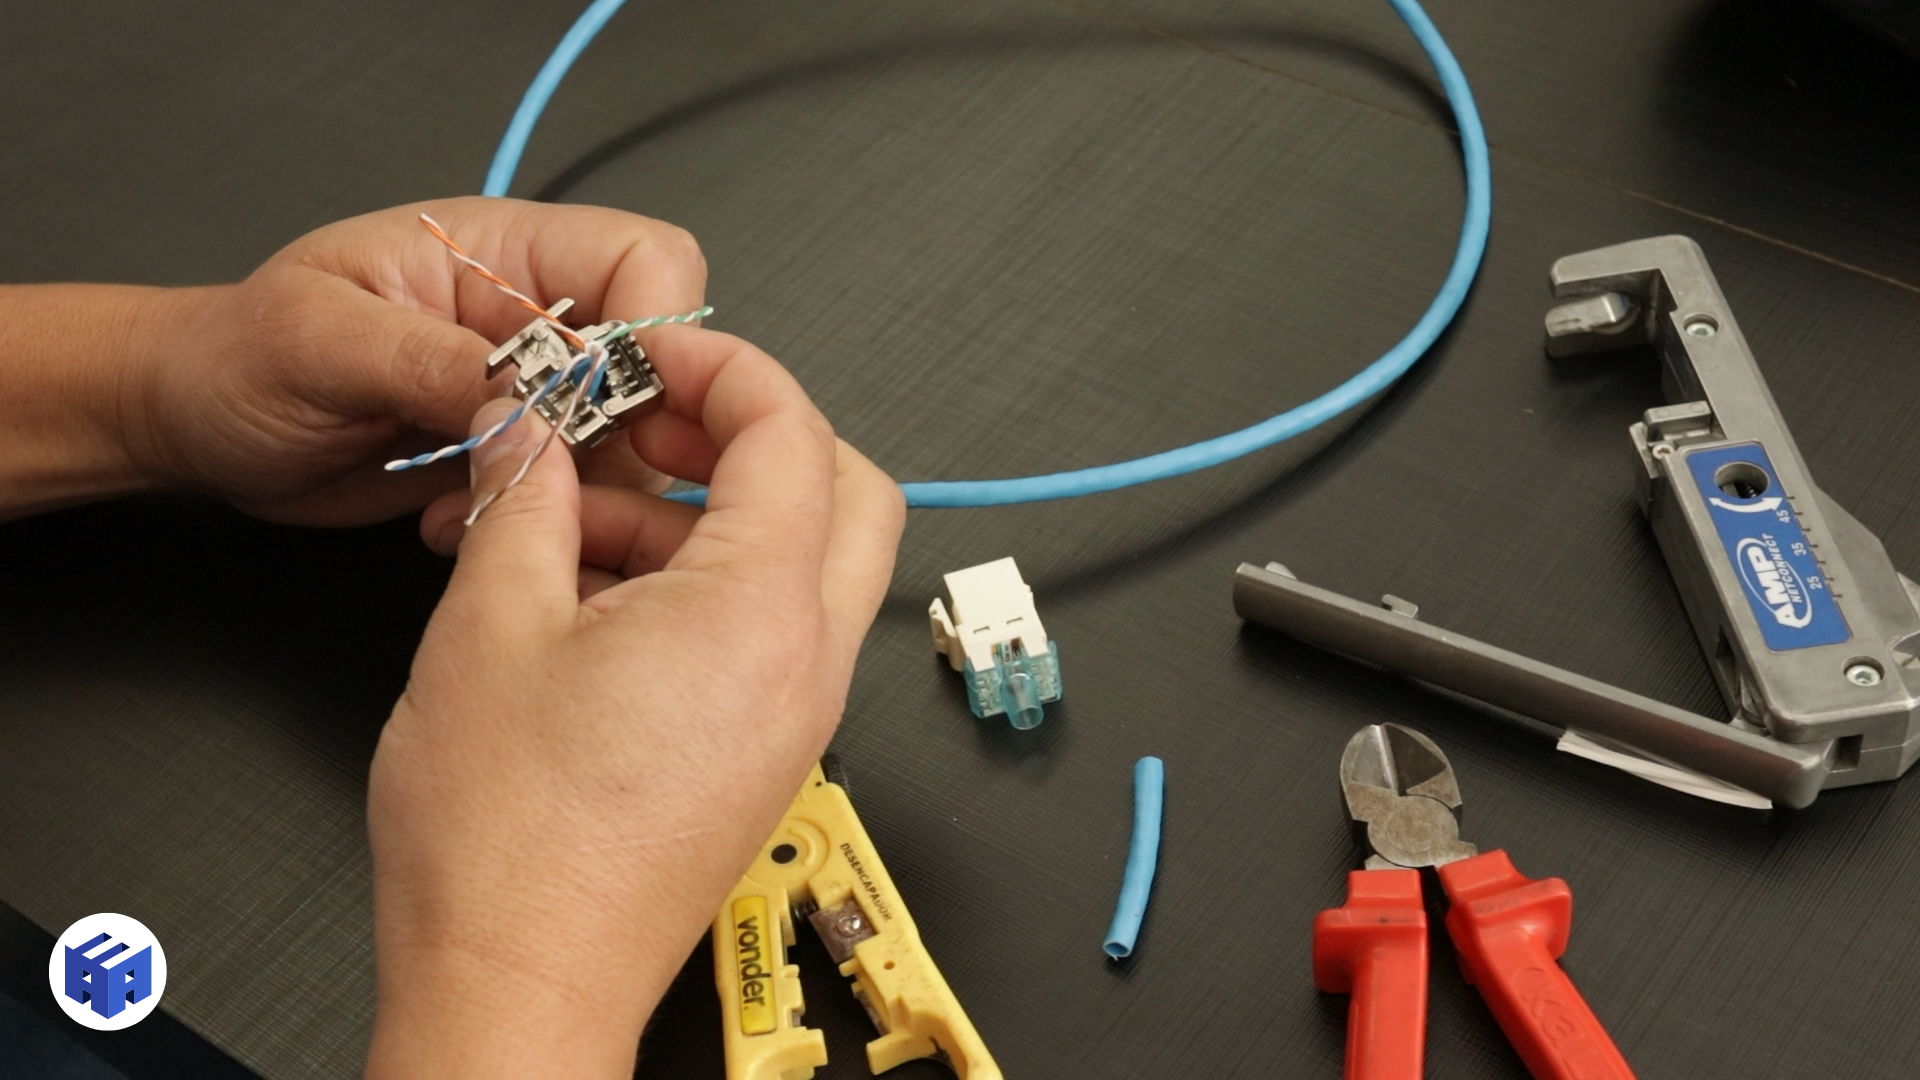 Foto mostrando o processo de crimpagem de um cabo TP Cat6a. O profissional utiliza um conector específico e ferramentas de crimpagem para fixar os fios ao conector, garantindo uma conexão segura e confiável no sistema de cabeamento estruturado.